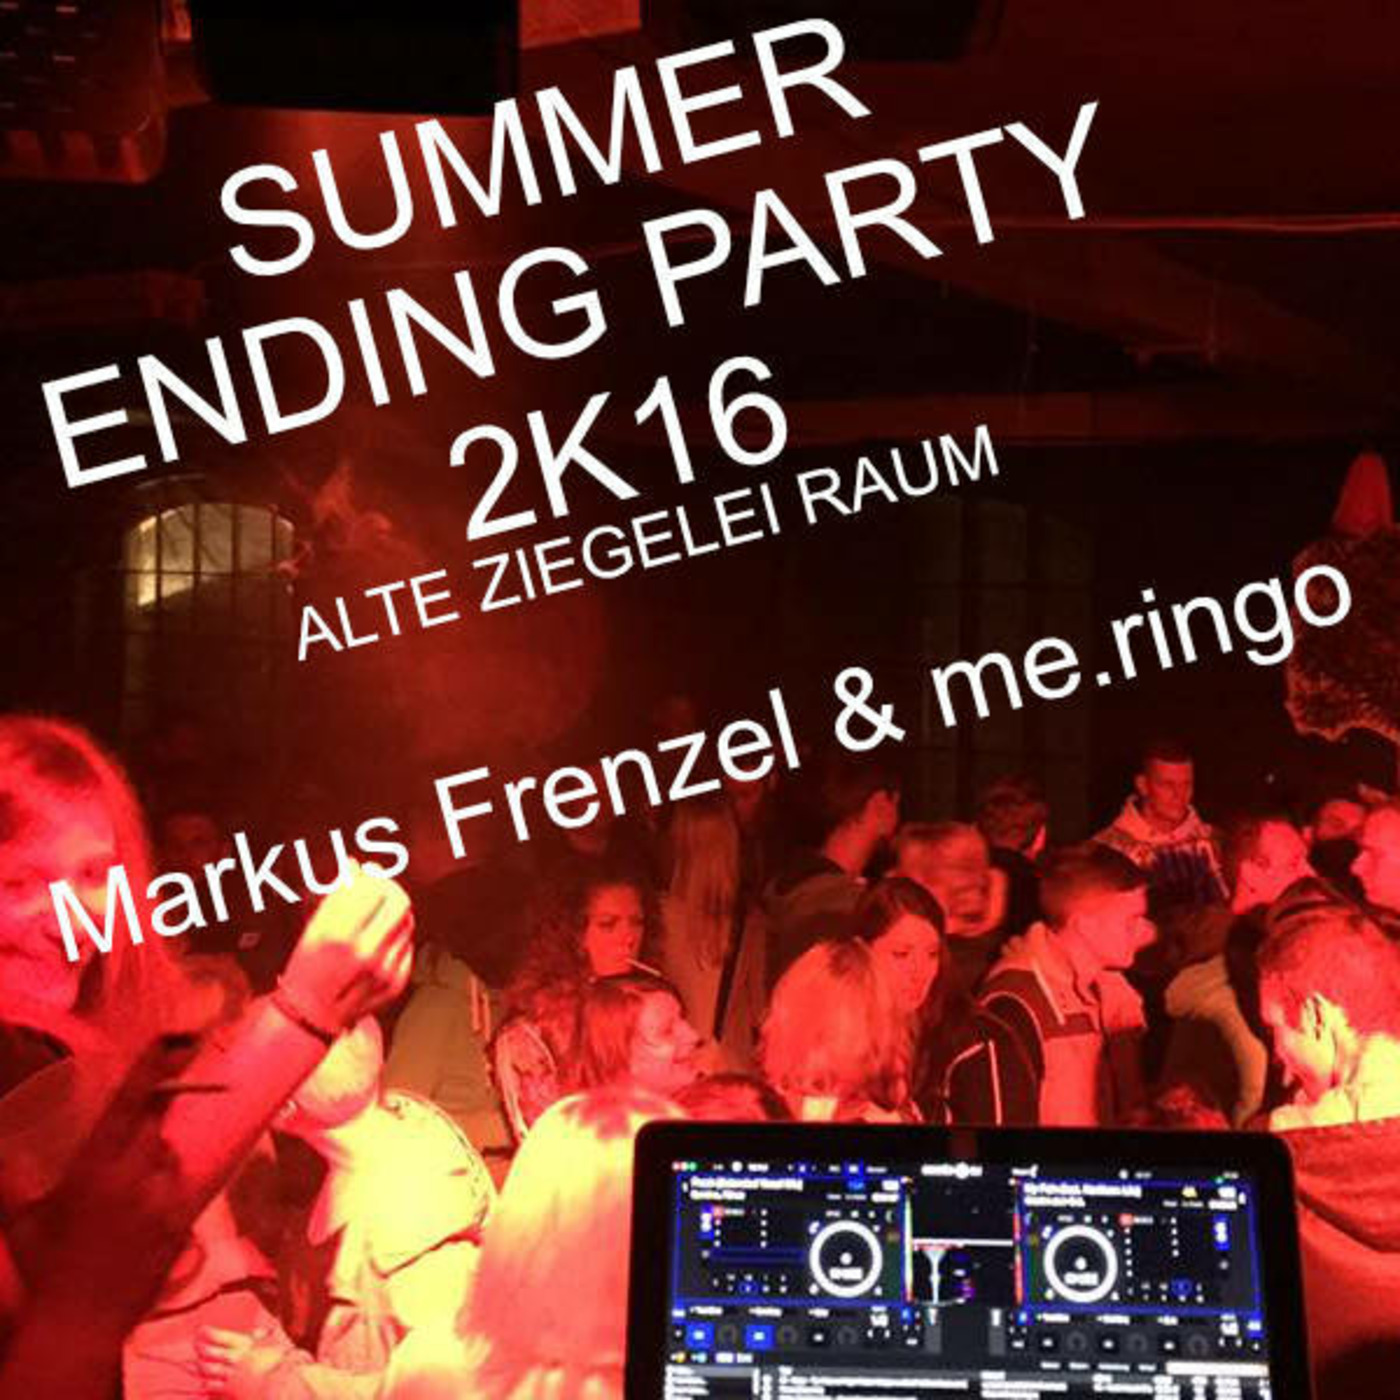 Summer Ending Party 2K16 / Alte Ziegel Raum